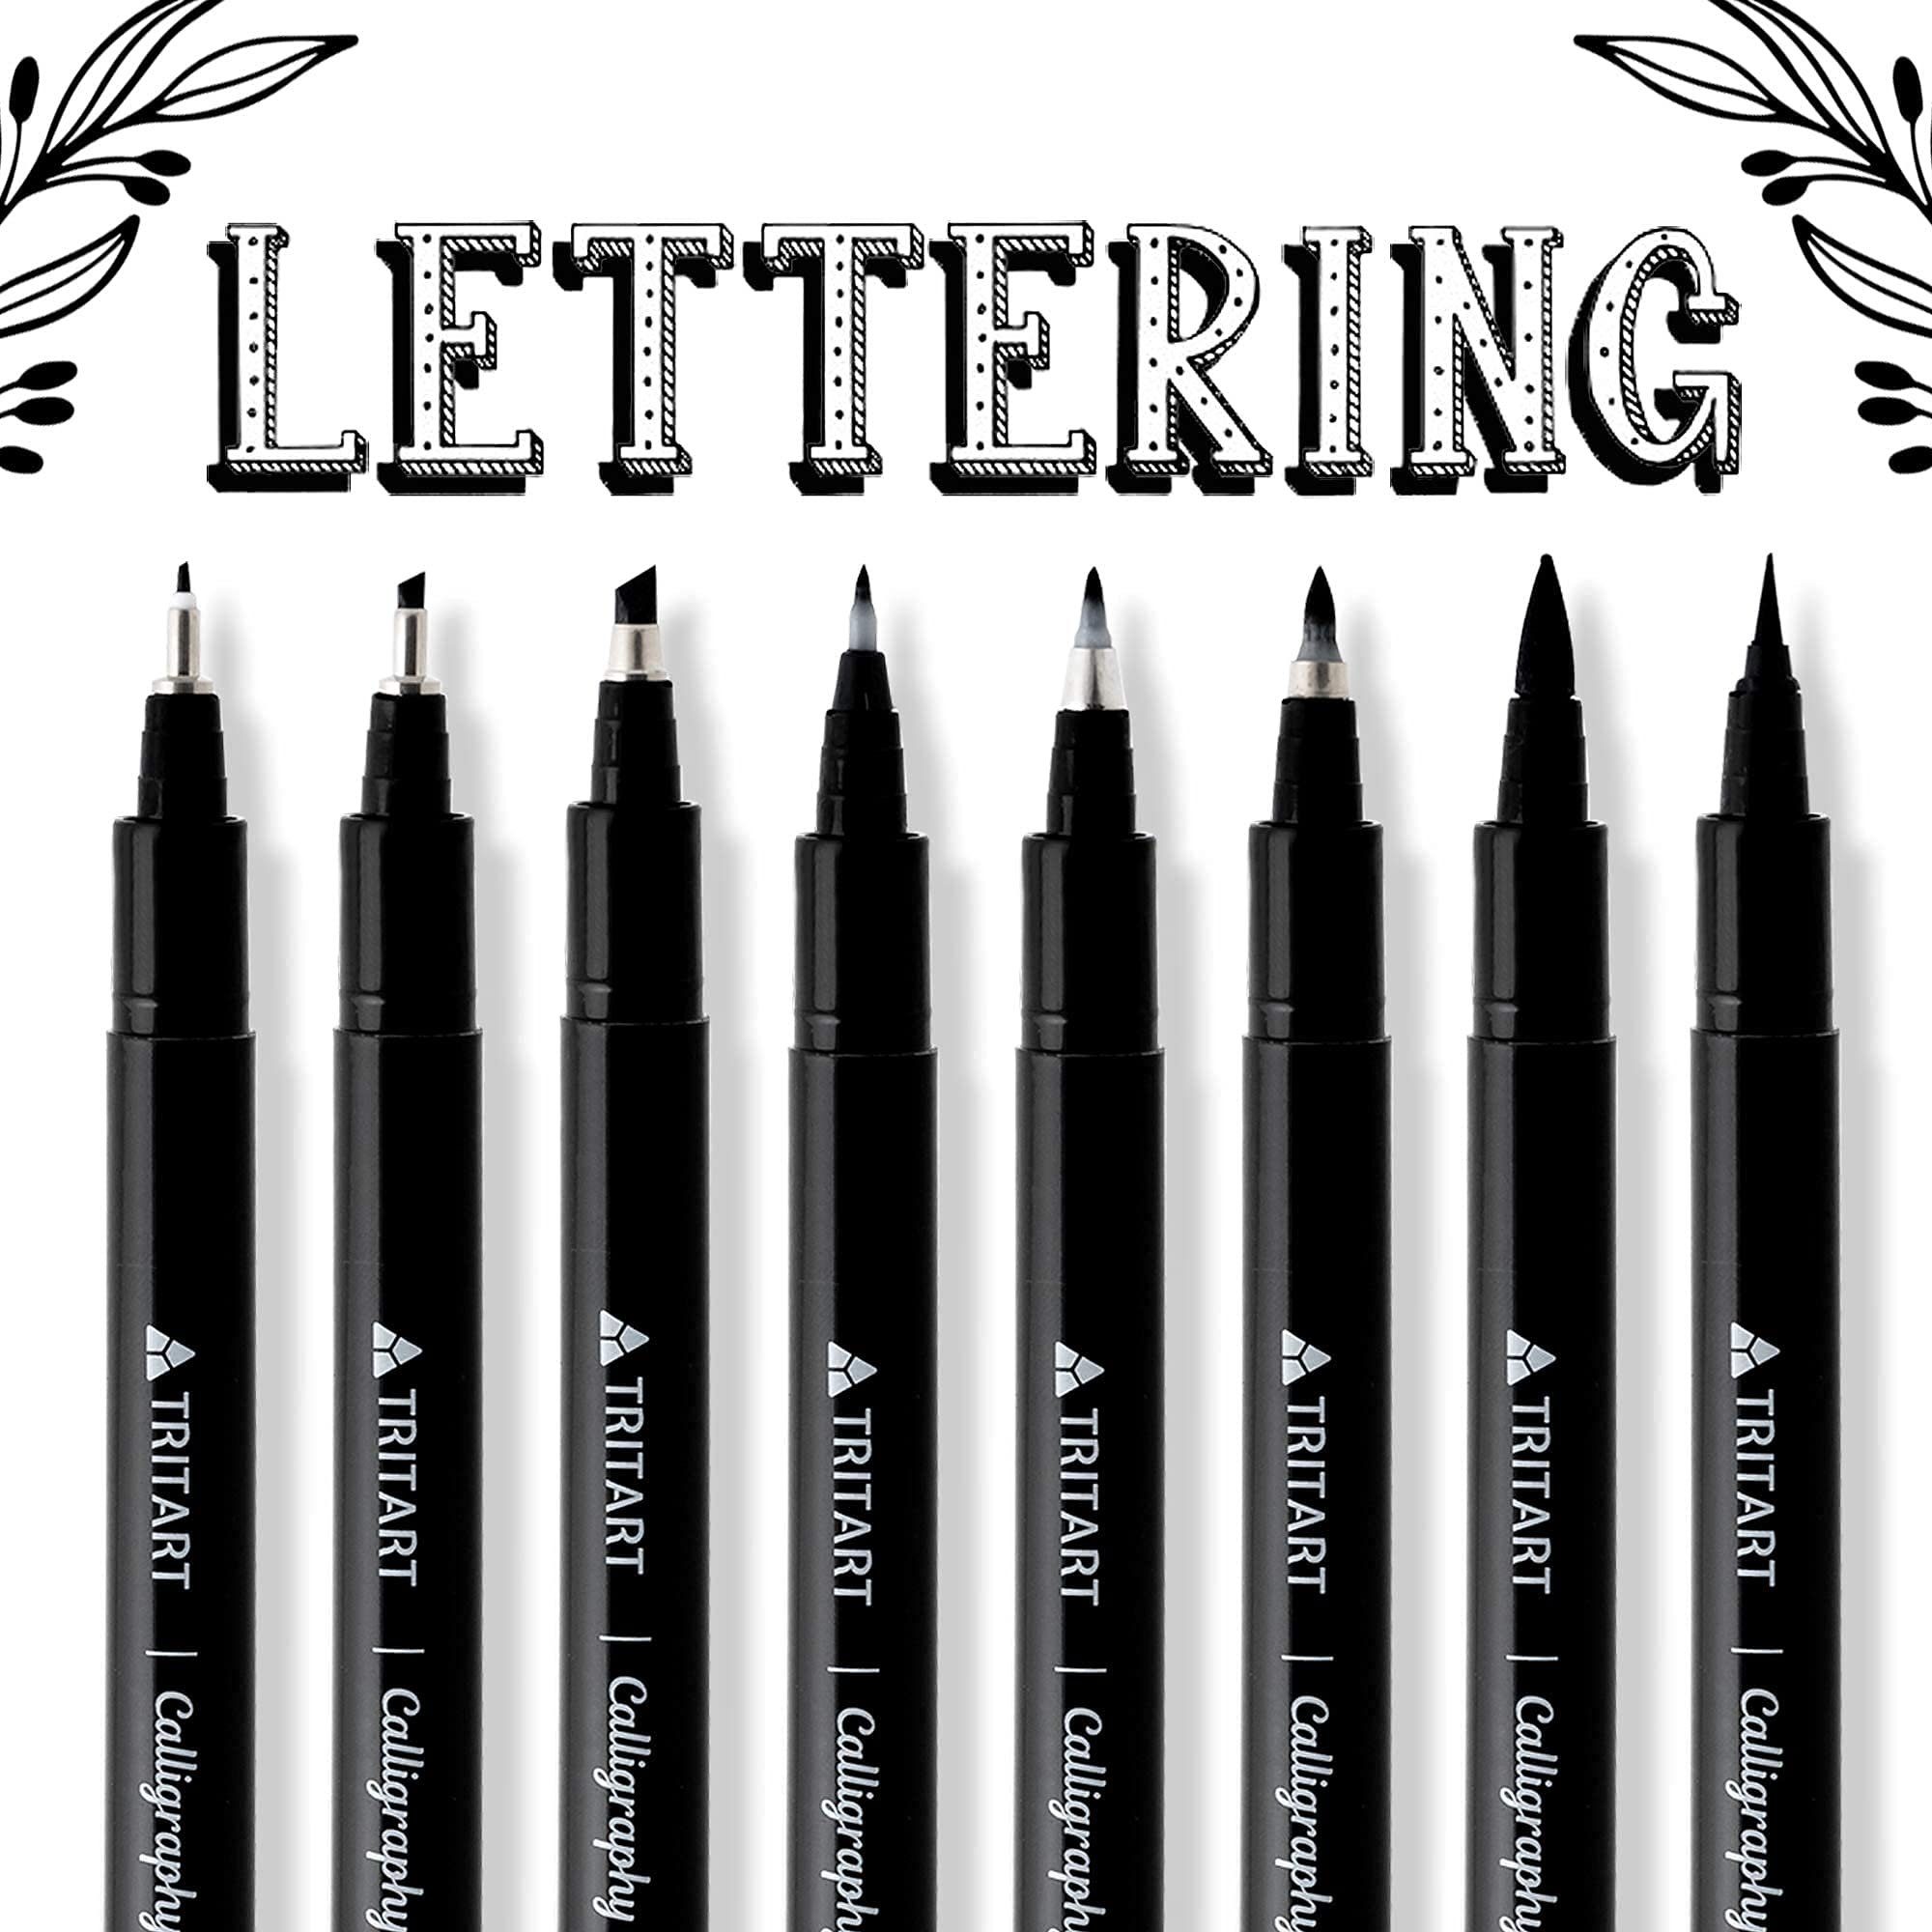 Kalligraphie 8 Pinselstift Handlettering Pinselstifte Stifte Tritart Set: Malen und Set: Kalligraphie Malerei, für Pinselstifte für und Stifte Handlettering 8